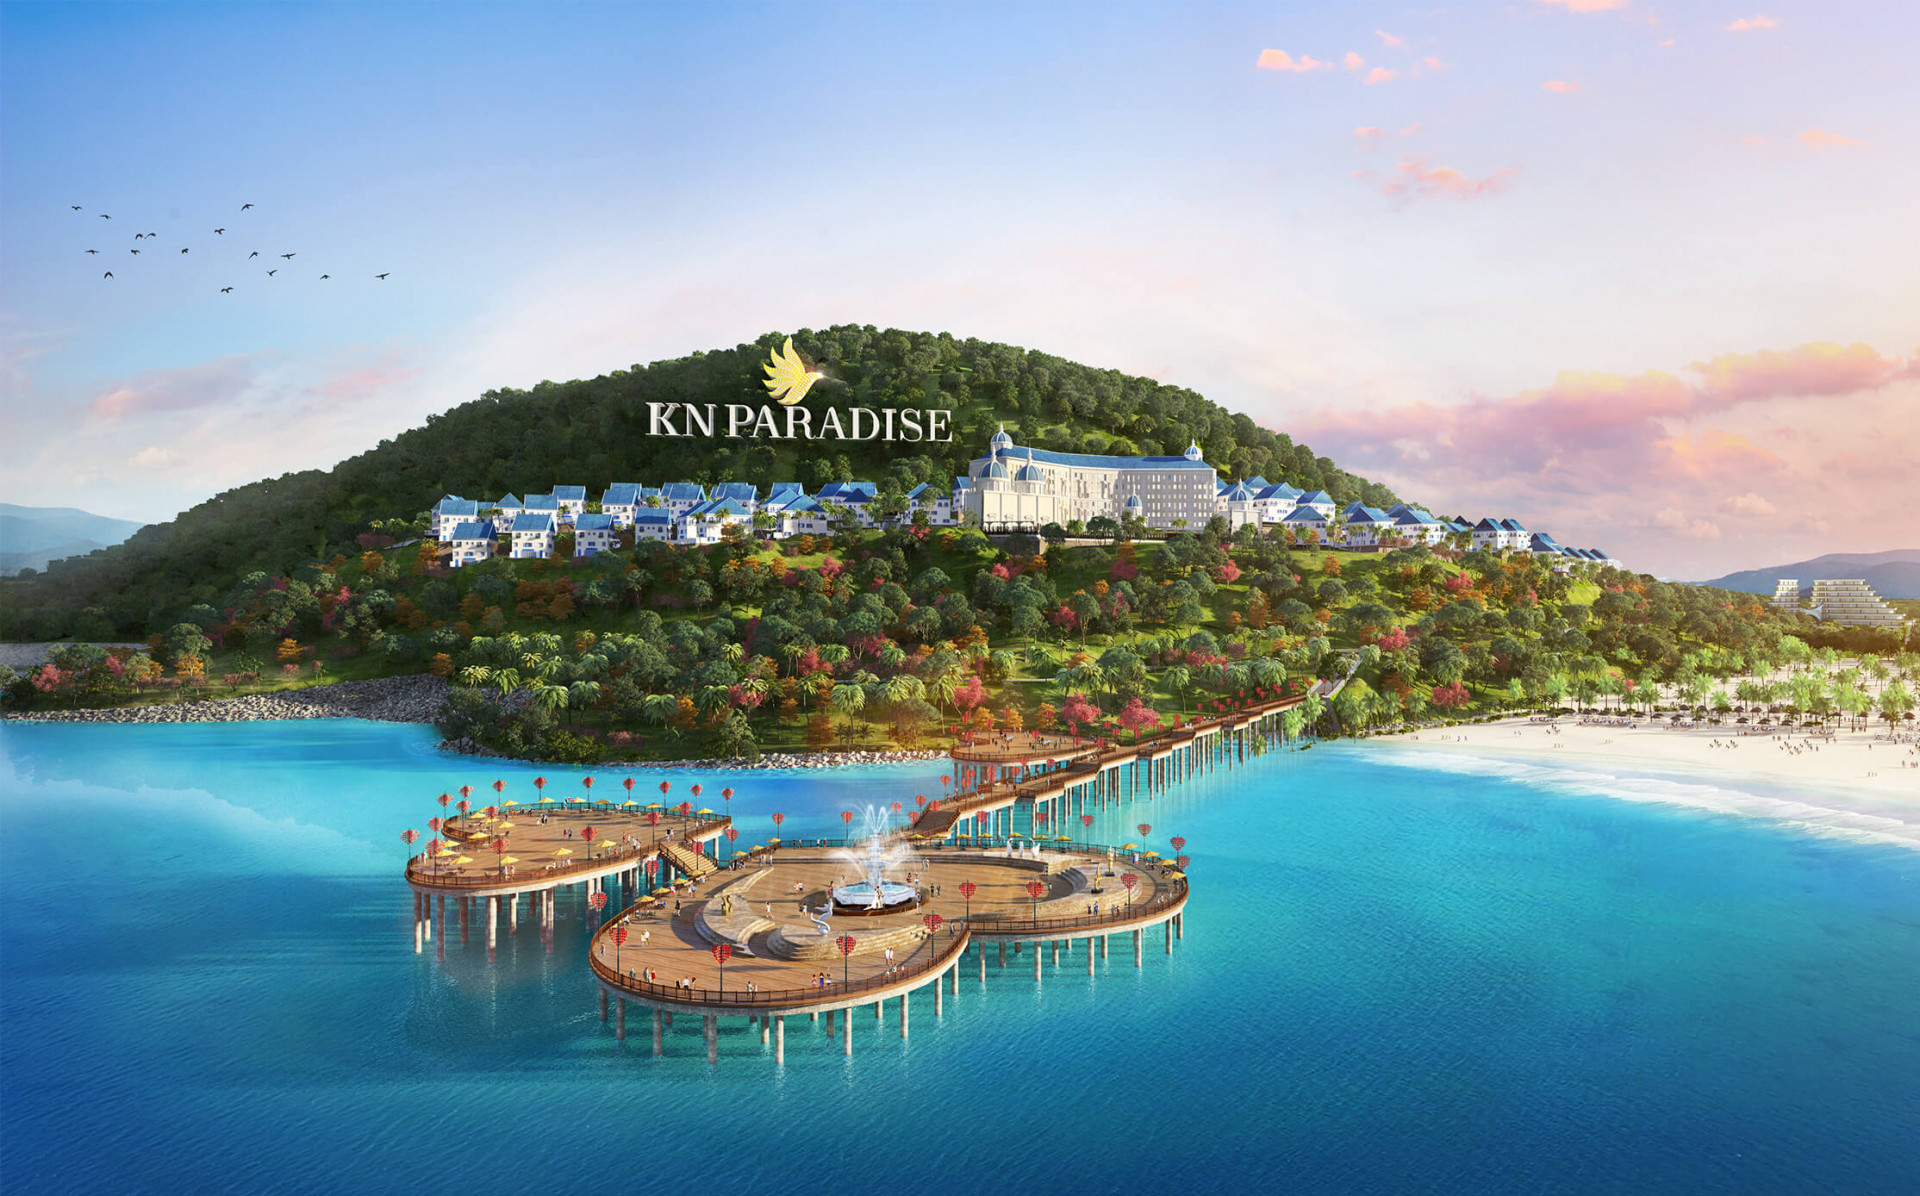 Dự án Paradise nằm liền kề với sân bay quốc tế Cam Ranh, với quy mô 800ha, đây là dự án đang được triển khai sở hữu quỹ đất lớn nhất tại Khánh Hòa.